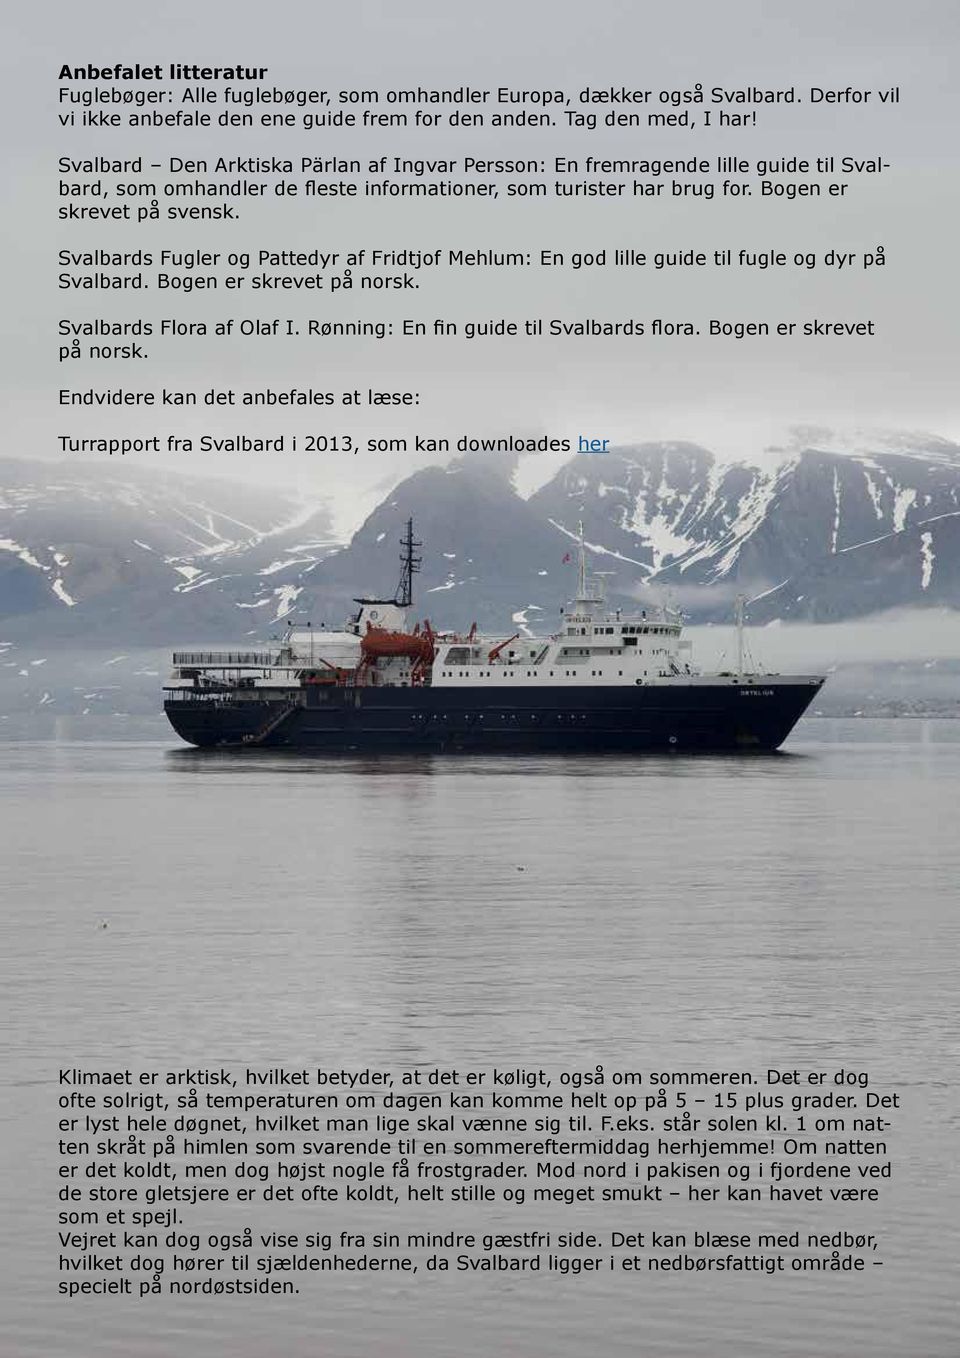 Svalbards Fugler og Pattedyr af Fridtjof Mehlum: En god lille guide til fugle og dyr på Svalbard. Bogen er skrevet på norsk. Svalbards Flora af Olaf I. Rønning: En fin guide til Svalbards flora.